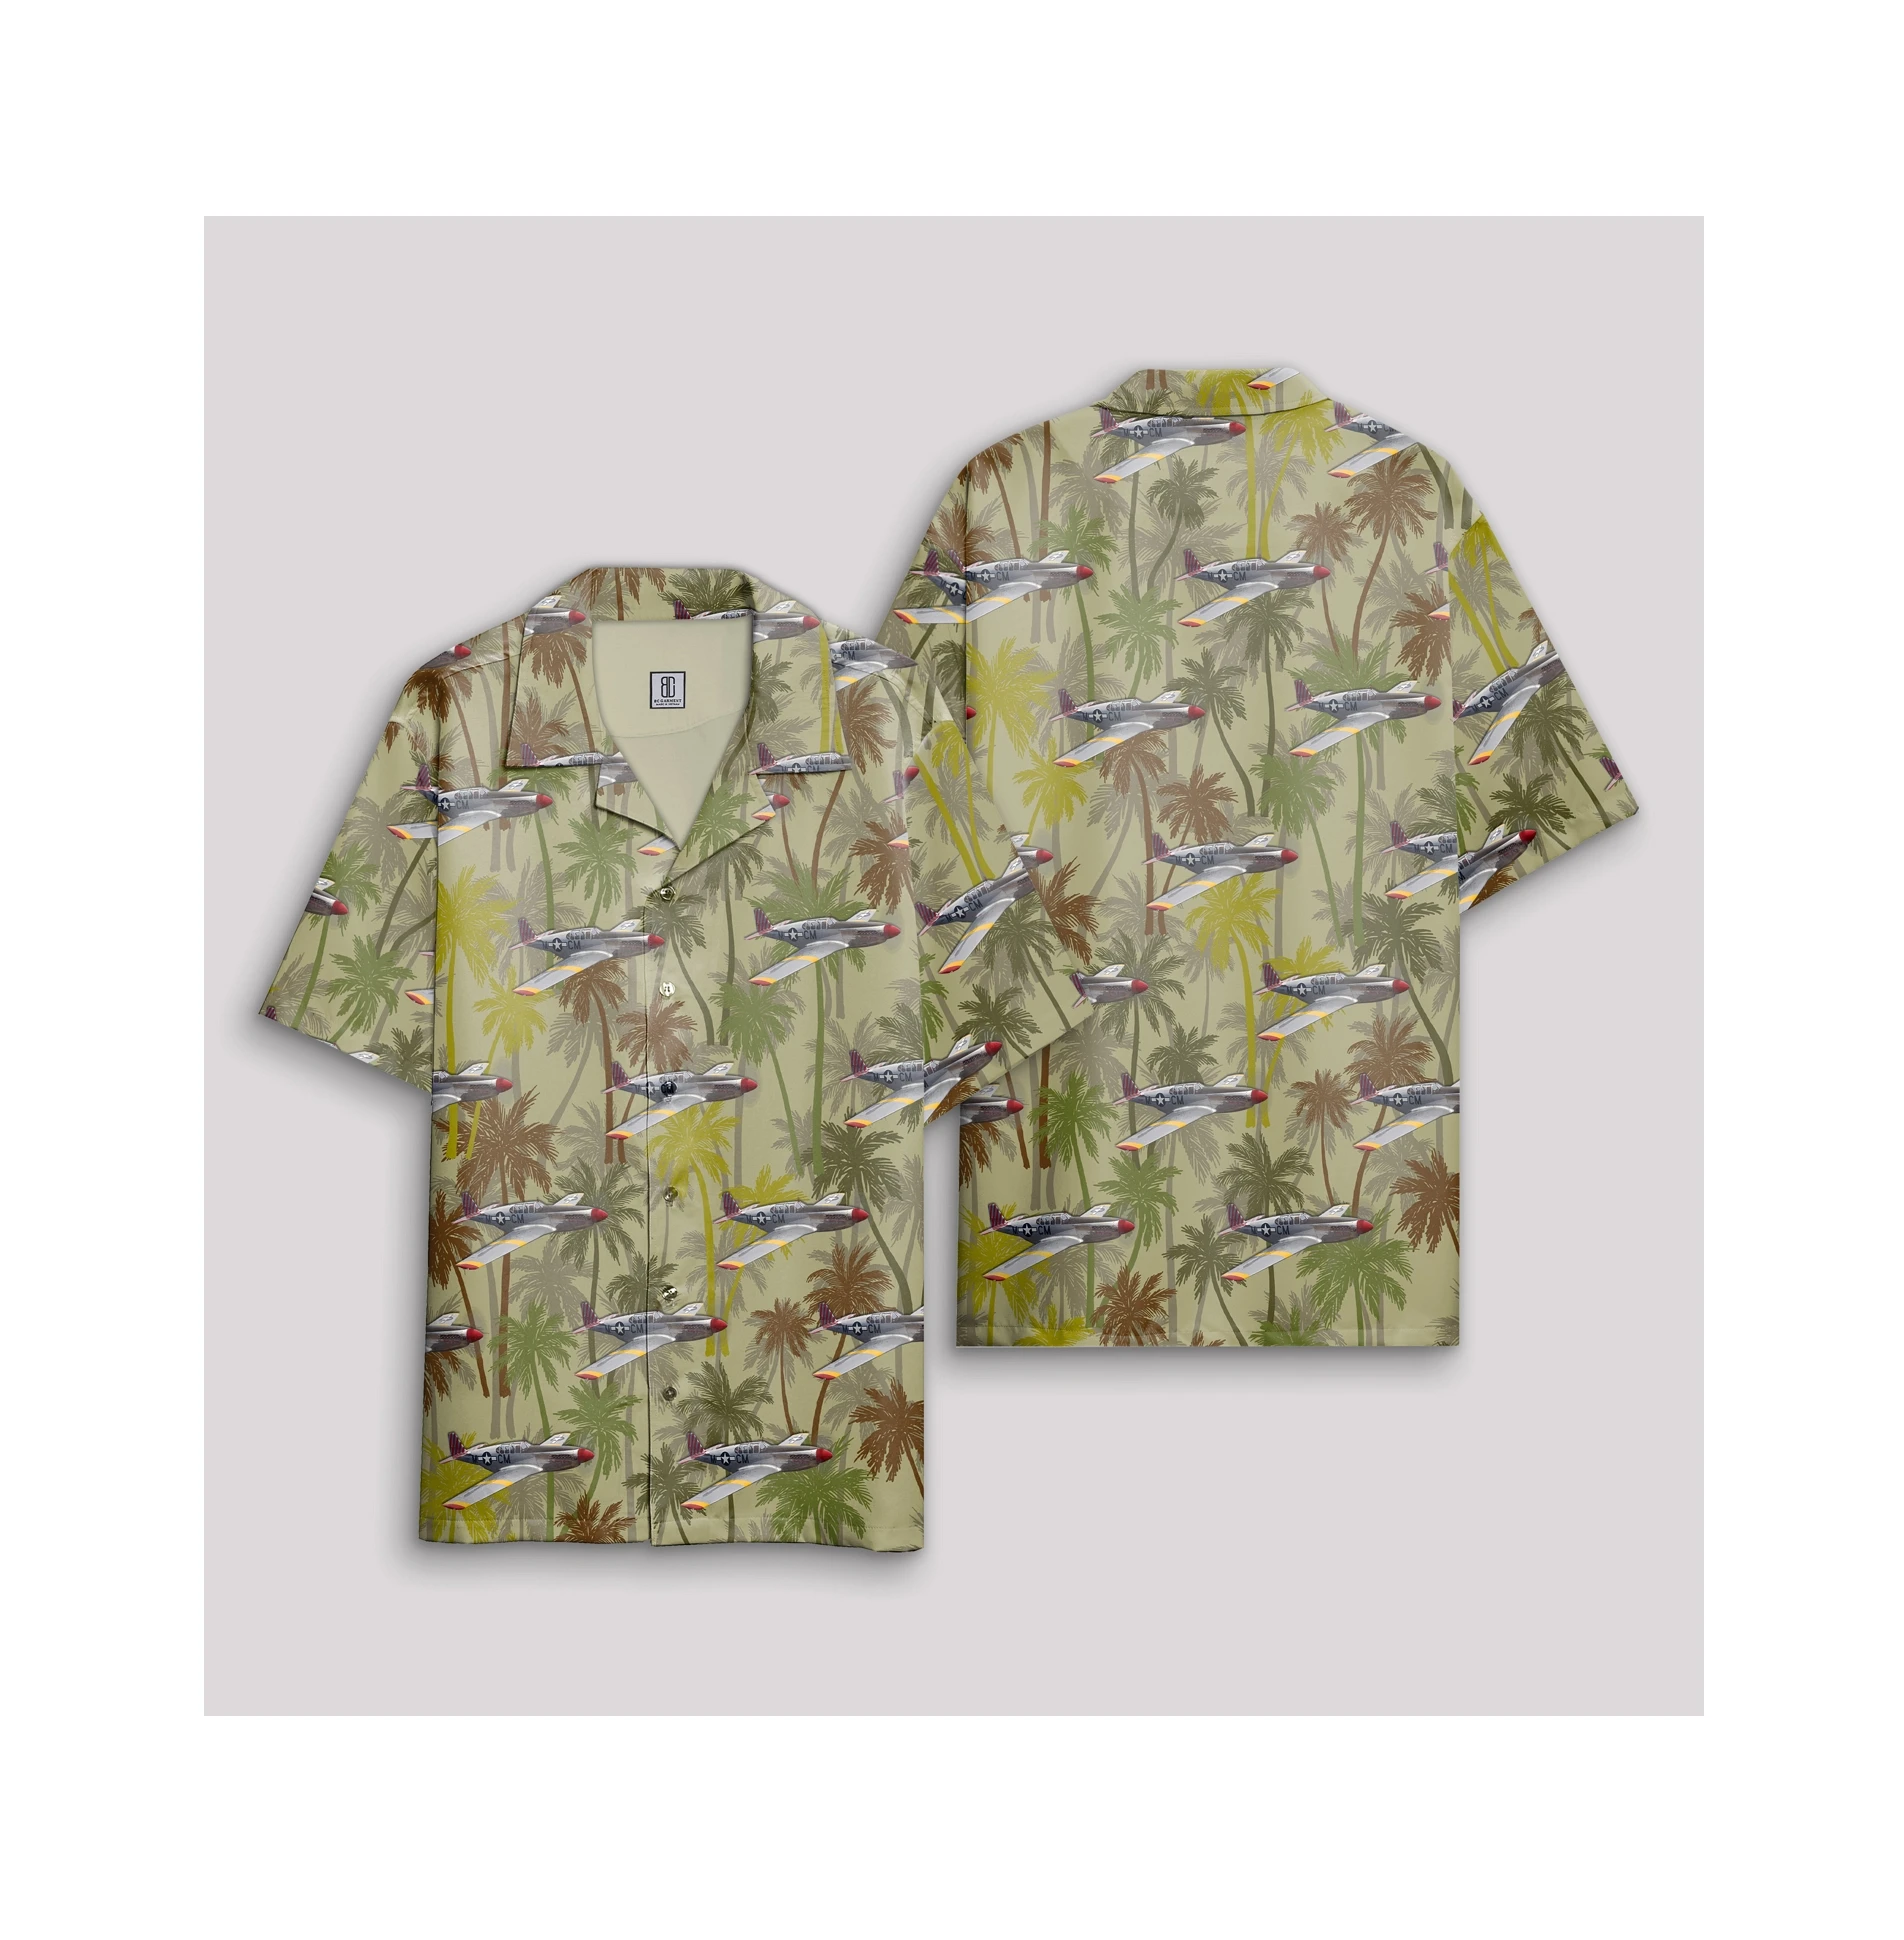 Camisa Hawaiana De Las Fuerzas Aéreas Del Ejército De Los Estados Unidos,P-51 América Del Norte,Mustang,Betty,Jane,Segunda Mundial,Nueva Colección,Venta Al Por Mayor - Buy Camisas Hawaianas Para Hombres Camisas De La Ropa